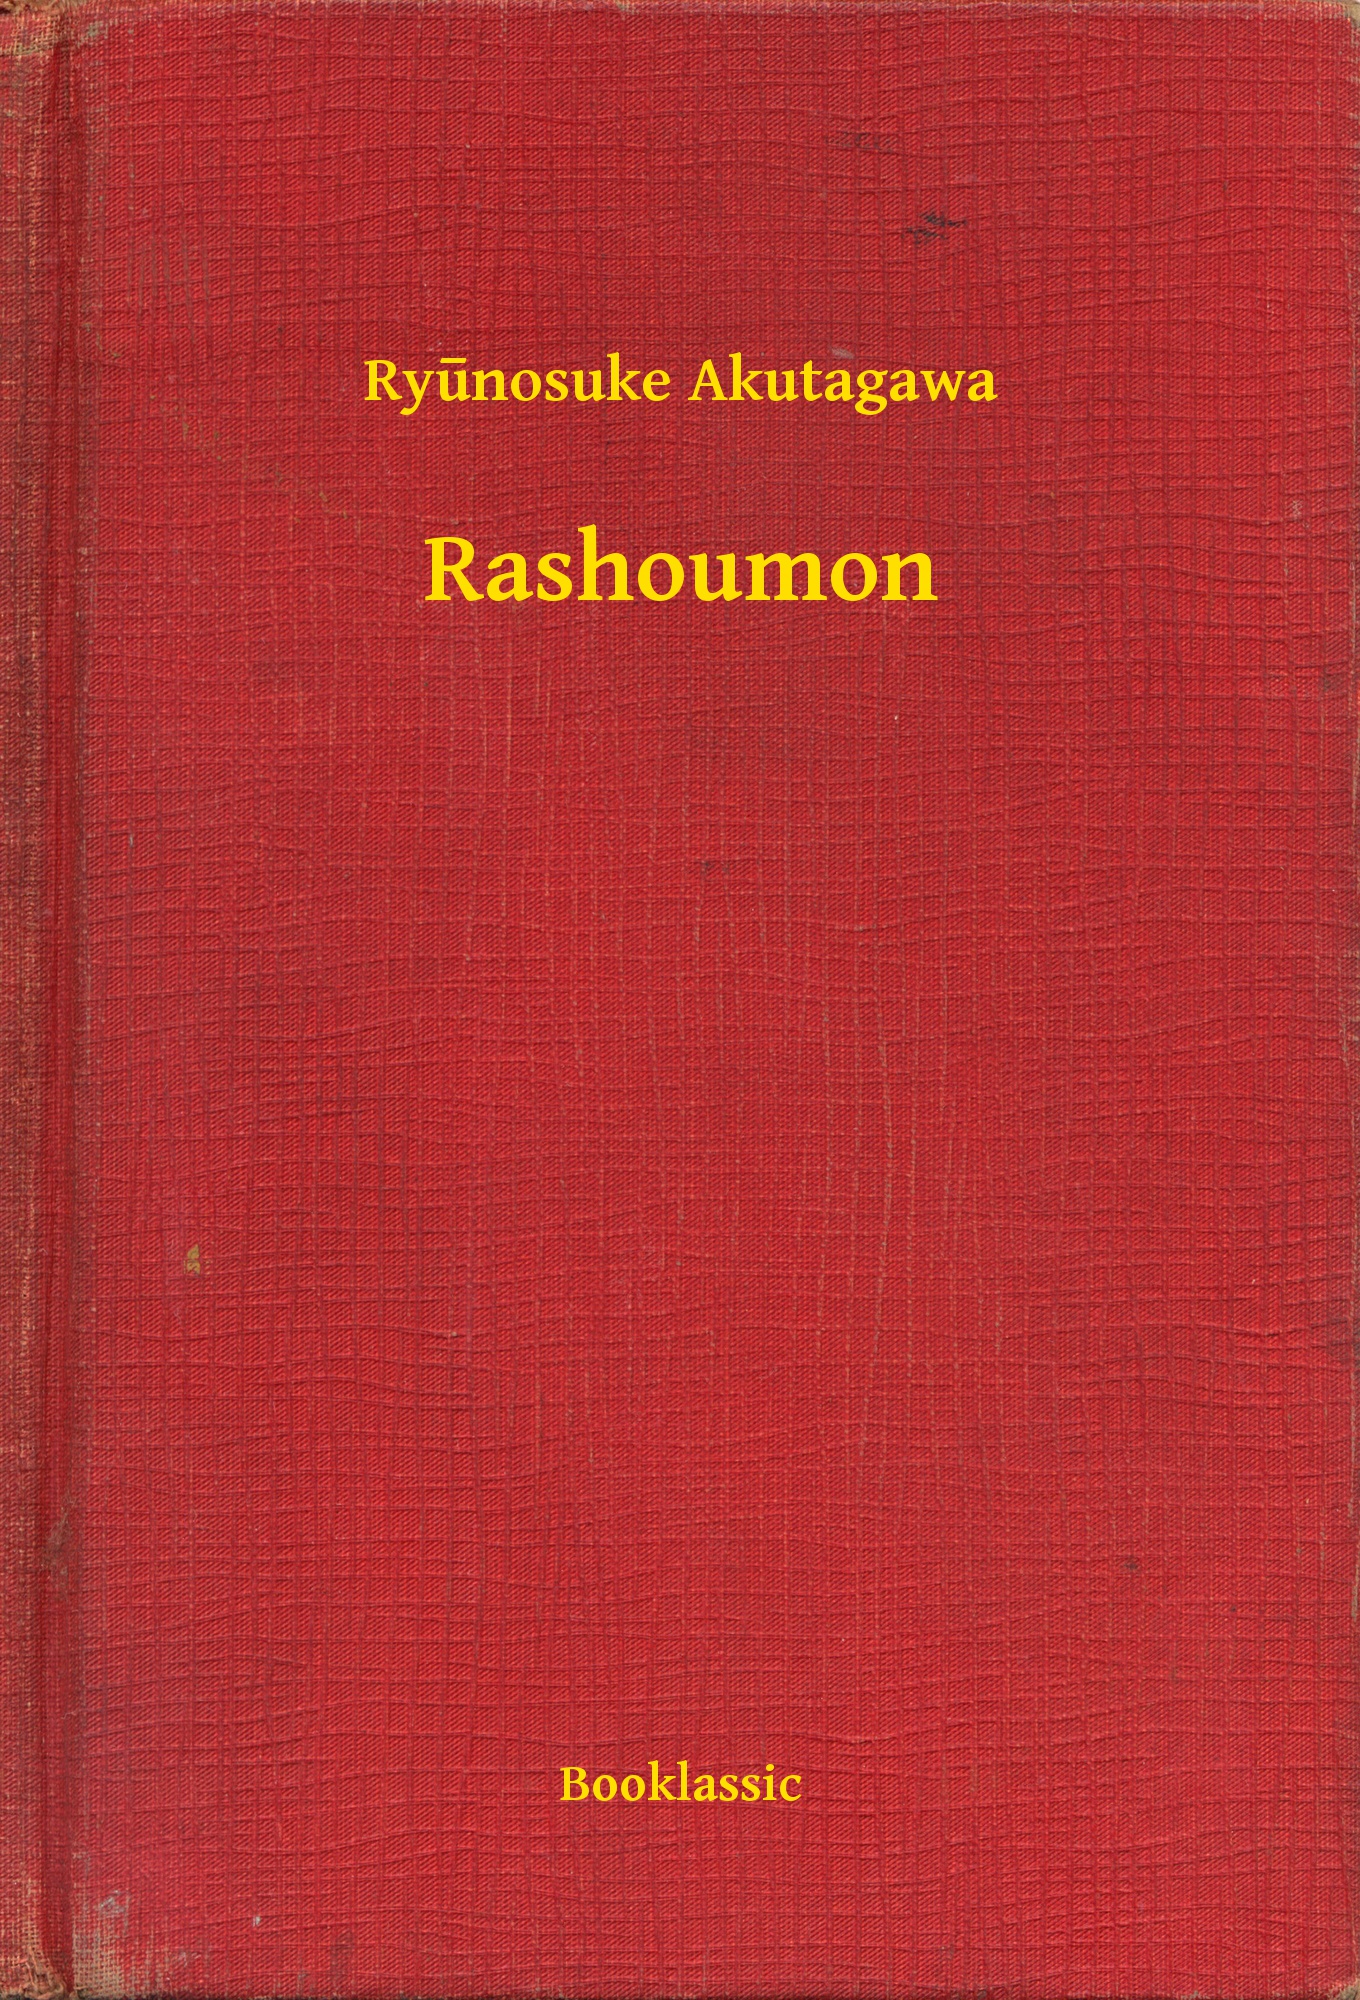 Rashoumon